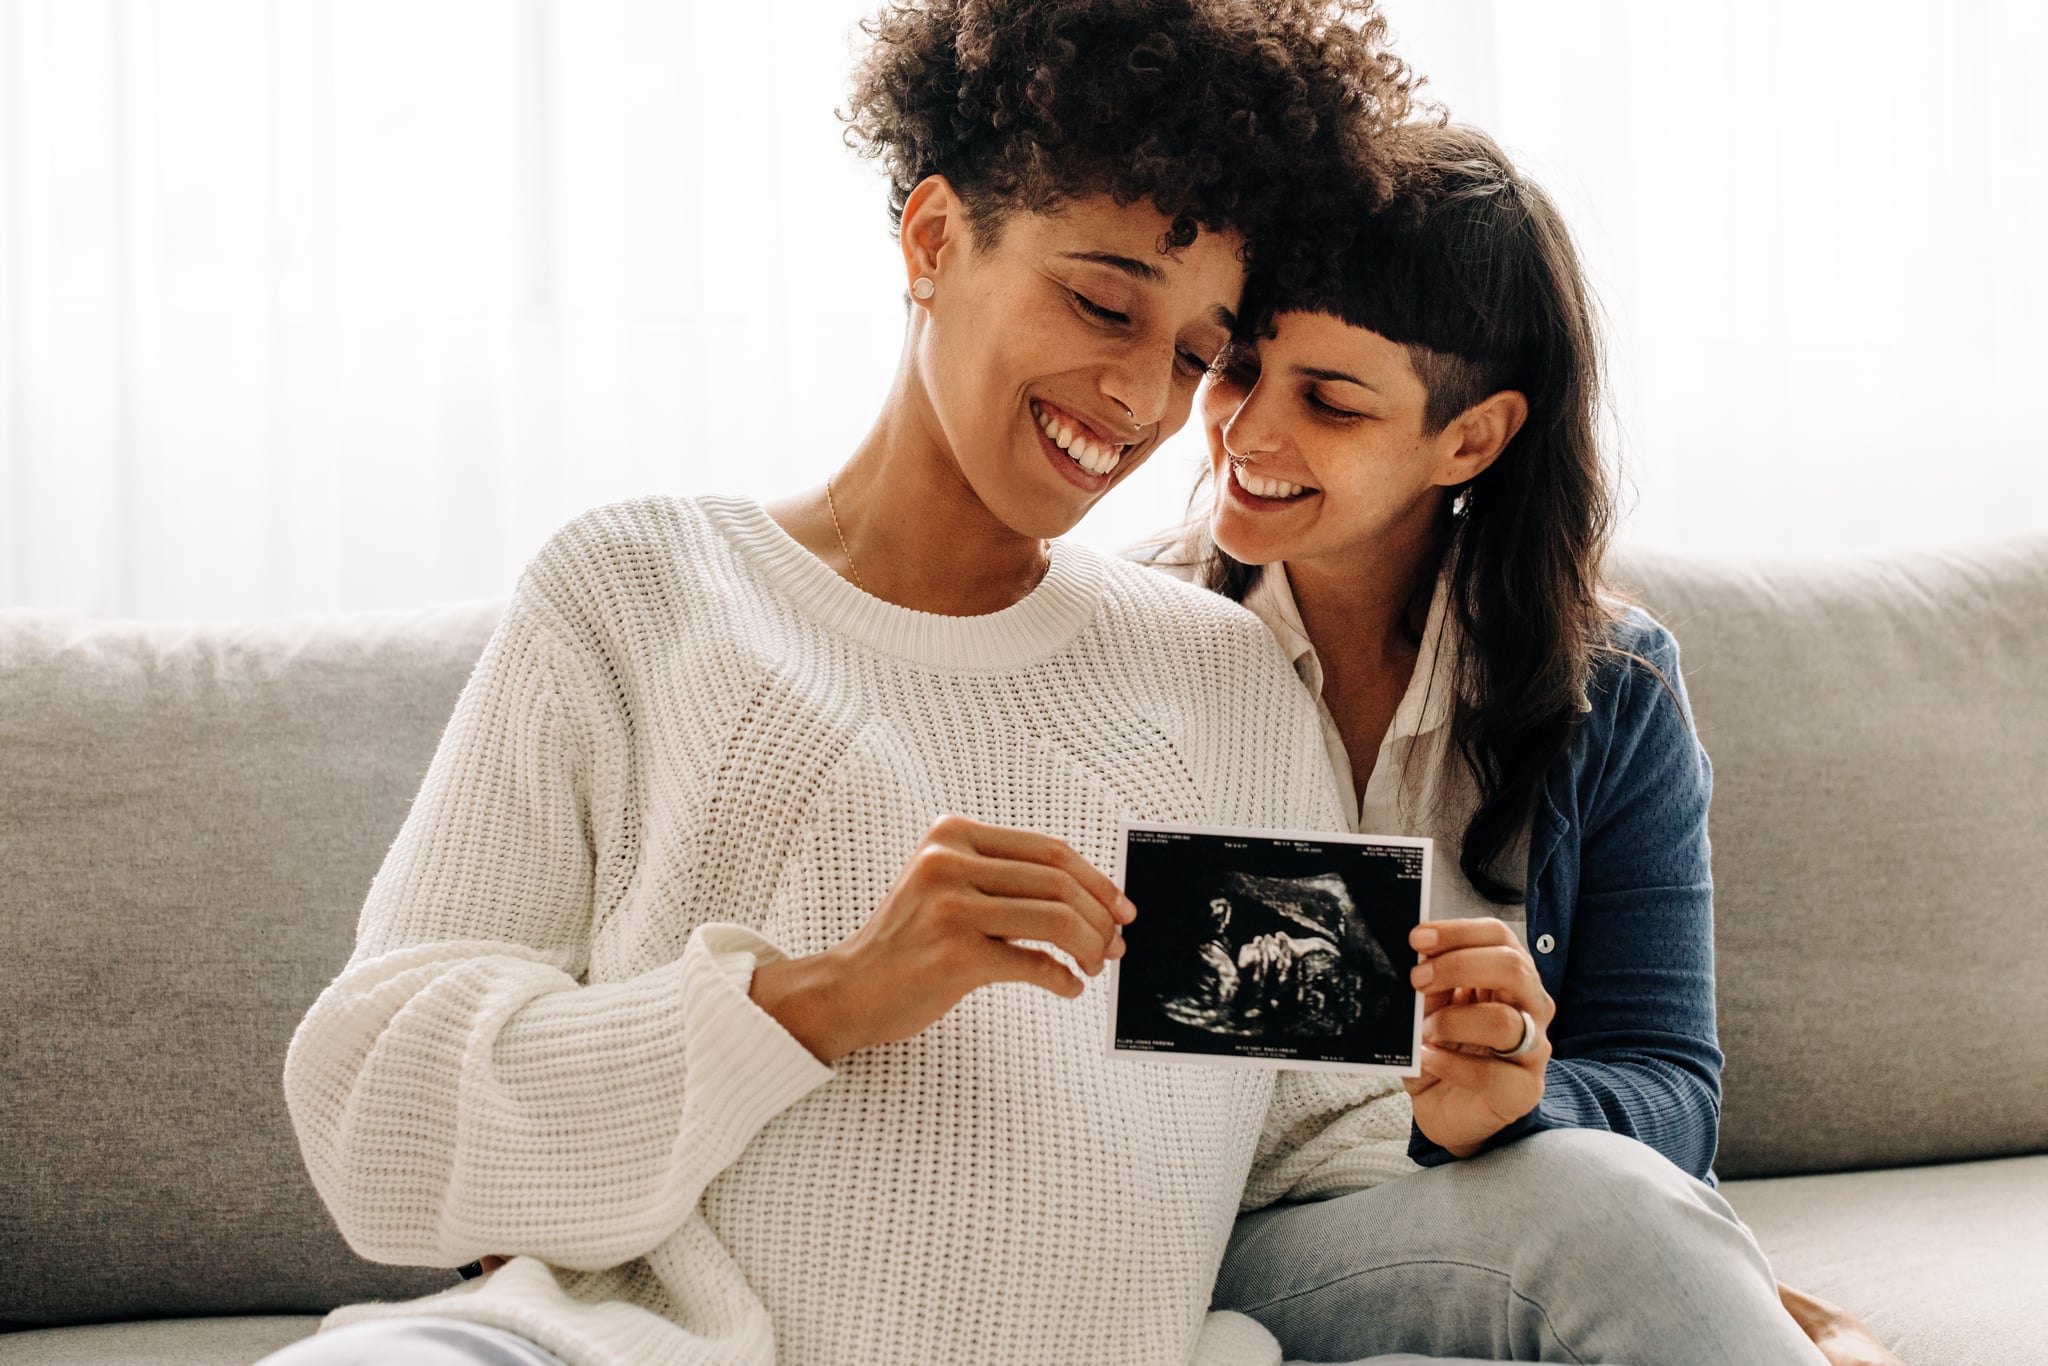 同性孕妇拿着他们的超声波扫描图。准女同性恋夫妇抱着未出生婴儿的超声波照片愉快地笑着。一对年轻的同性恋夫妇怀上了孩子。